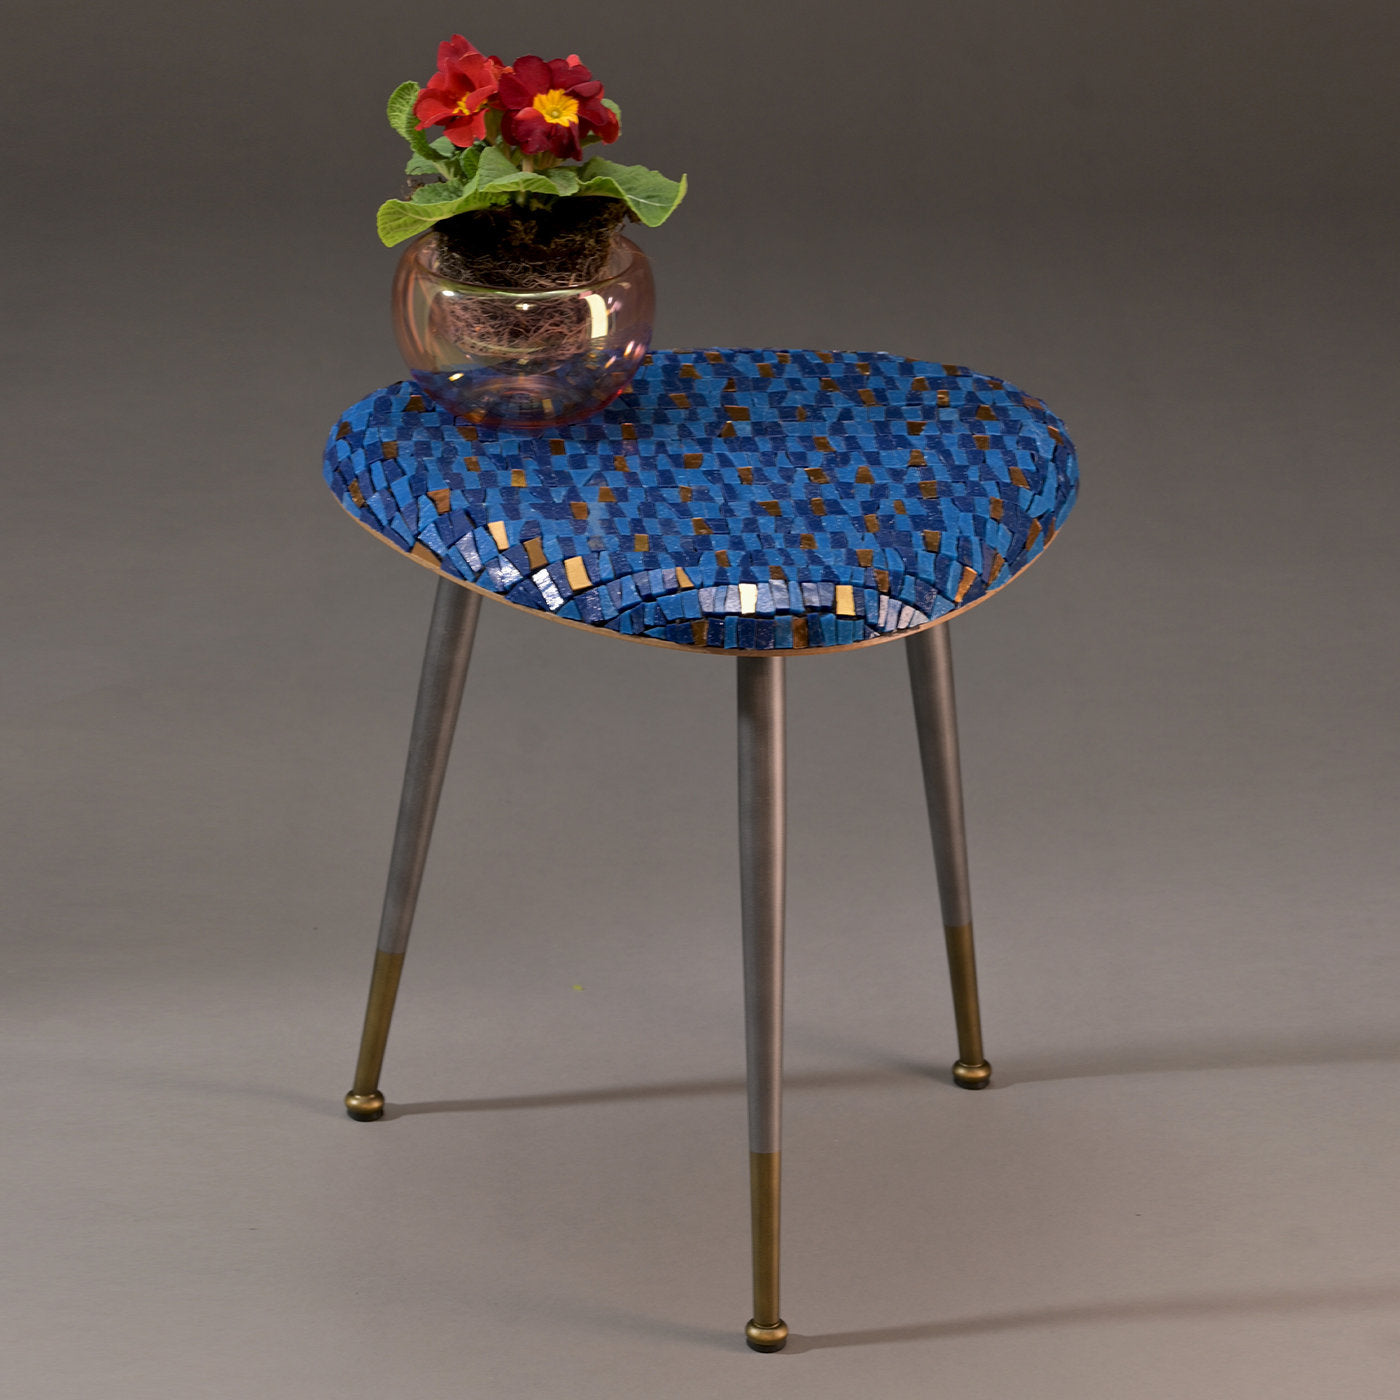 Casarialto Atelier Acqua coffee table by Michela Nardin - Alternative view 3